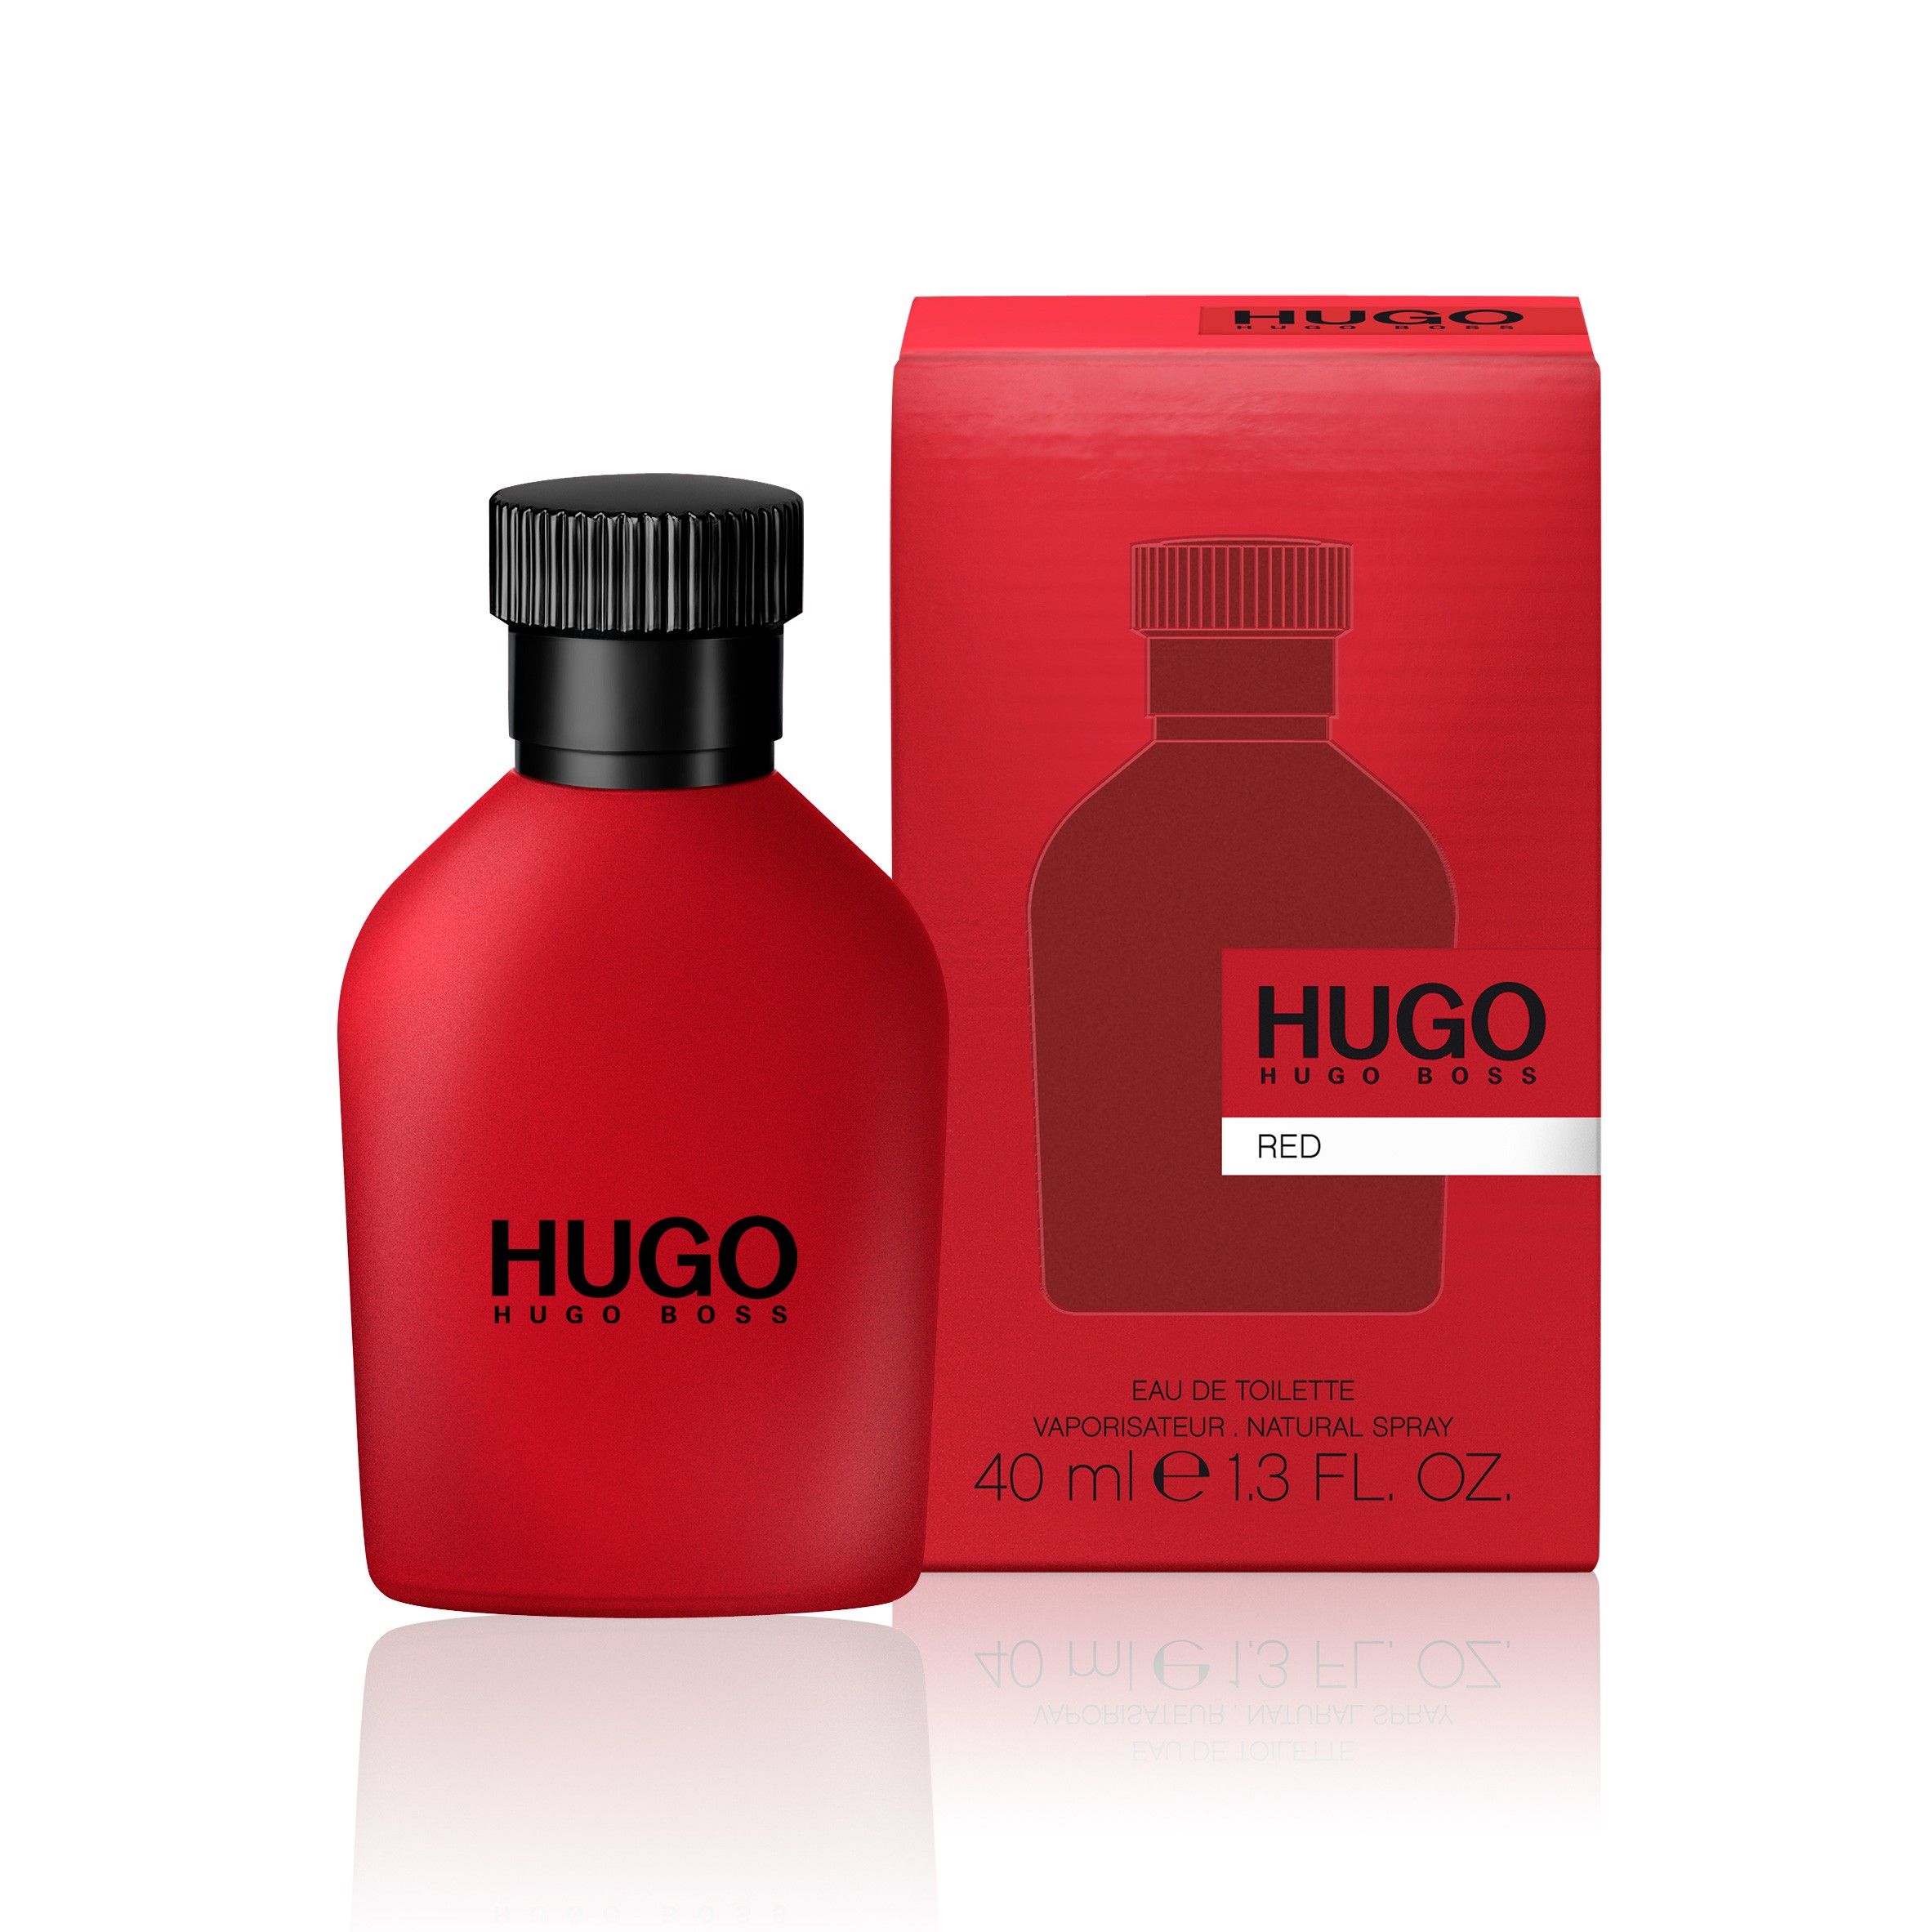 Hugo перевод на русский. Hugo Boss "Hugo Red" EDT, 100ml. Hugo Boss Red, EDT., 150 ml. Hugo Boss Red EDT Хьюго босс ред туалетная вода 150 ml. Hugo Boss мужской Hugo туалетная вода (EDT) 40мл.